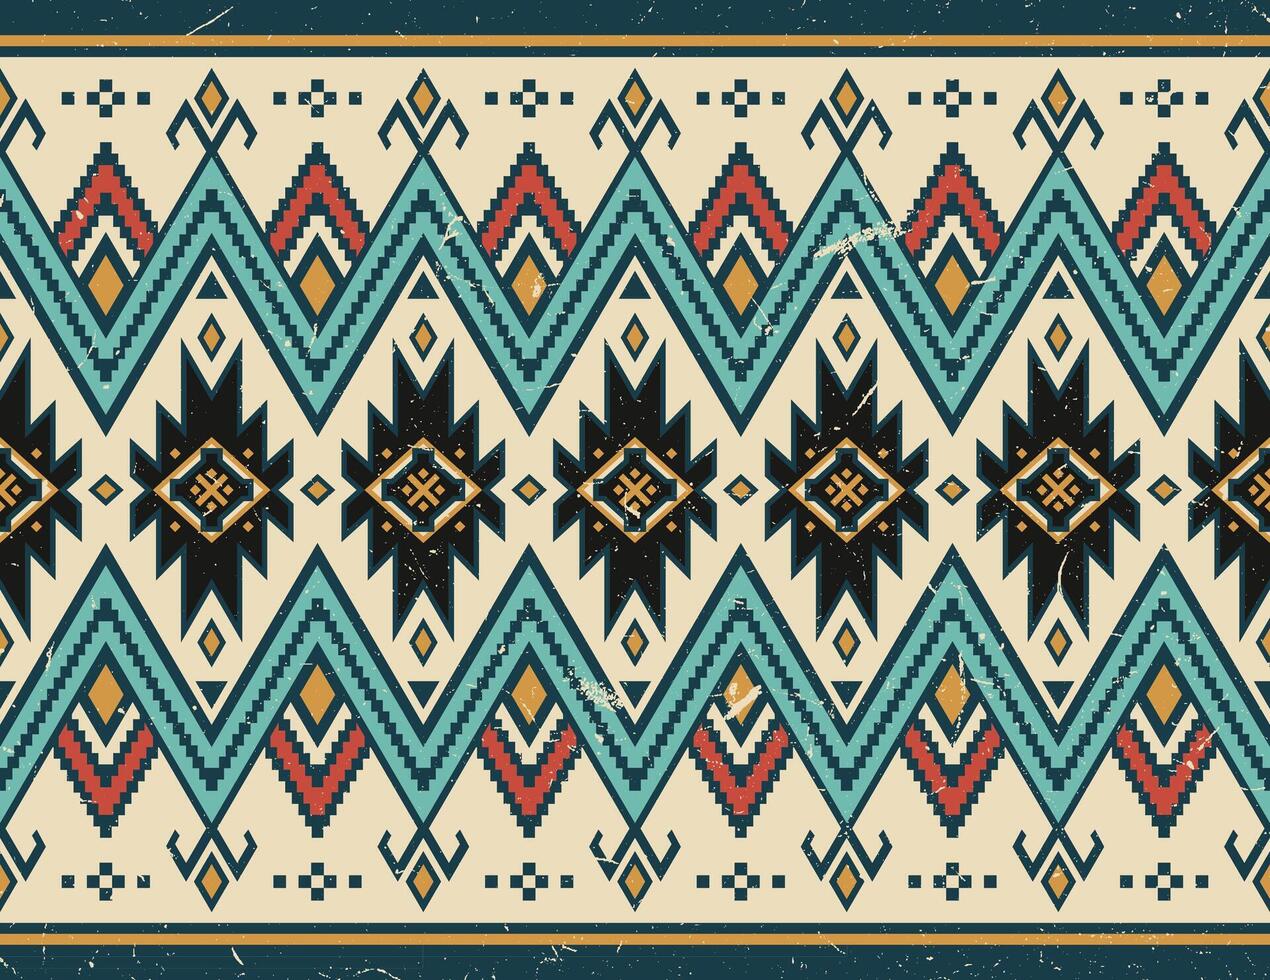 aztec tribal meetkundig grunge textuur. wijnoogst vector achtergrond. naadloos streep patroon. traditioneel ornament etnisch stijl. ontwerp voor textiel, kleding stof, kleding, gordijn, tapijt, ornament, inpakken.